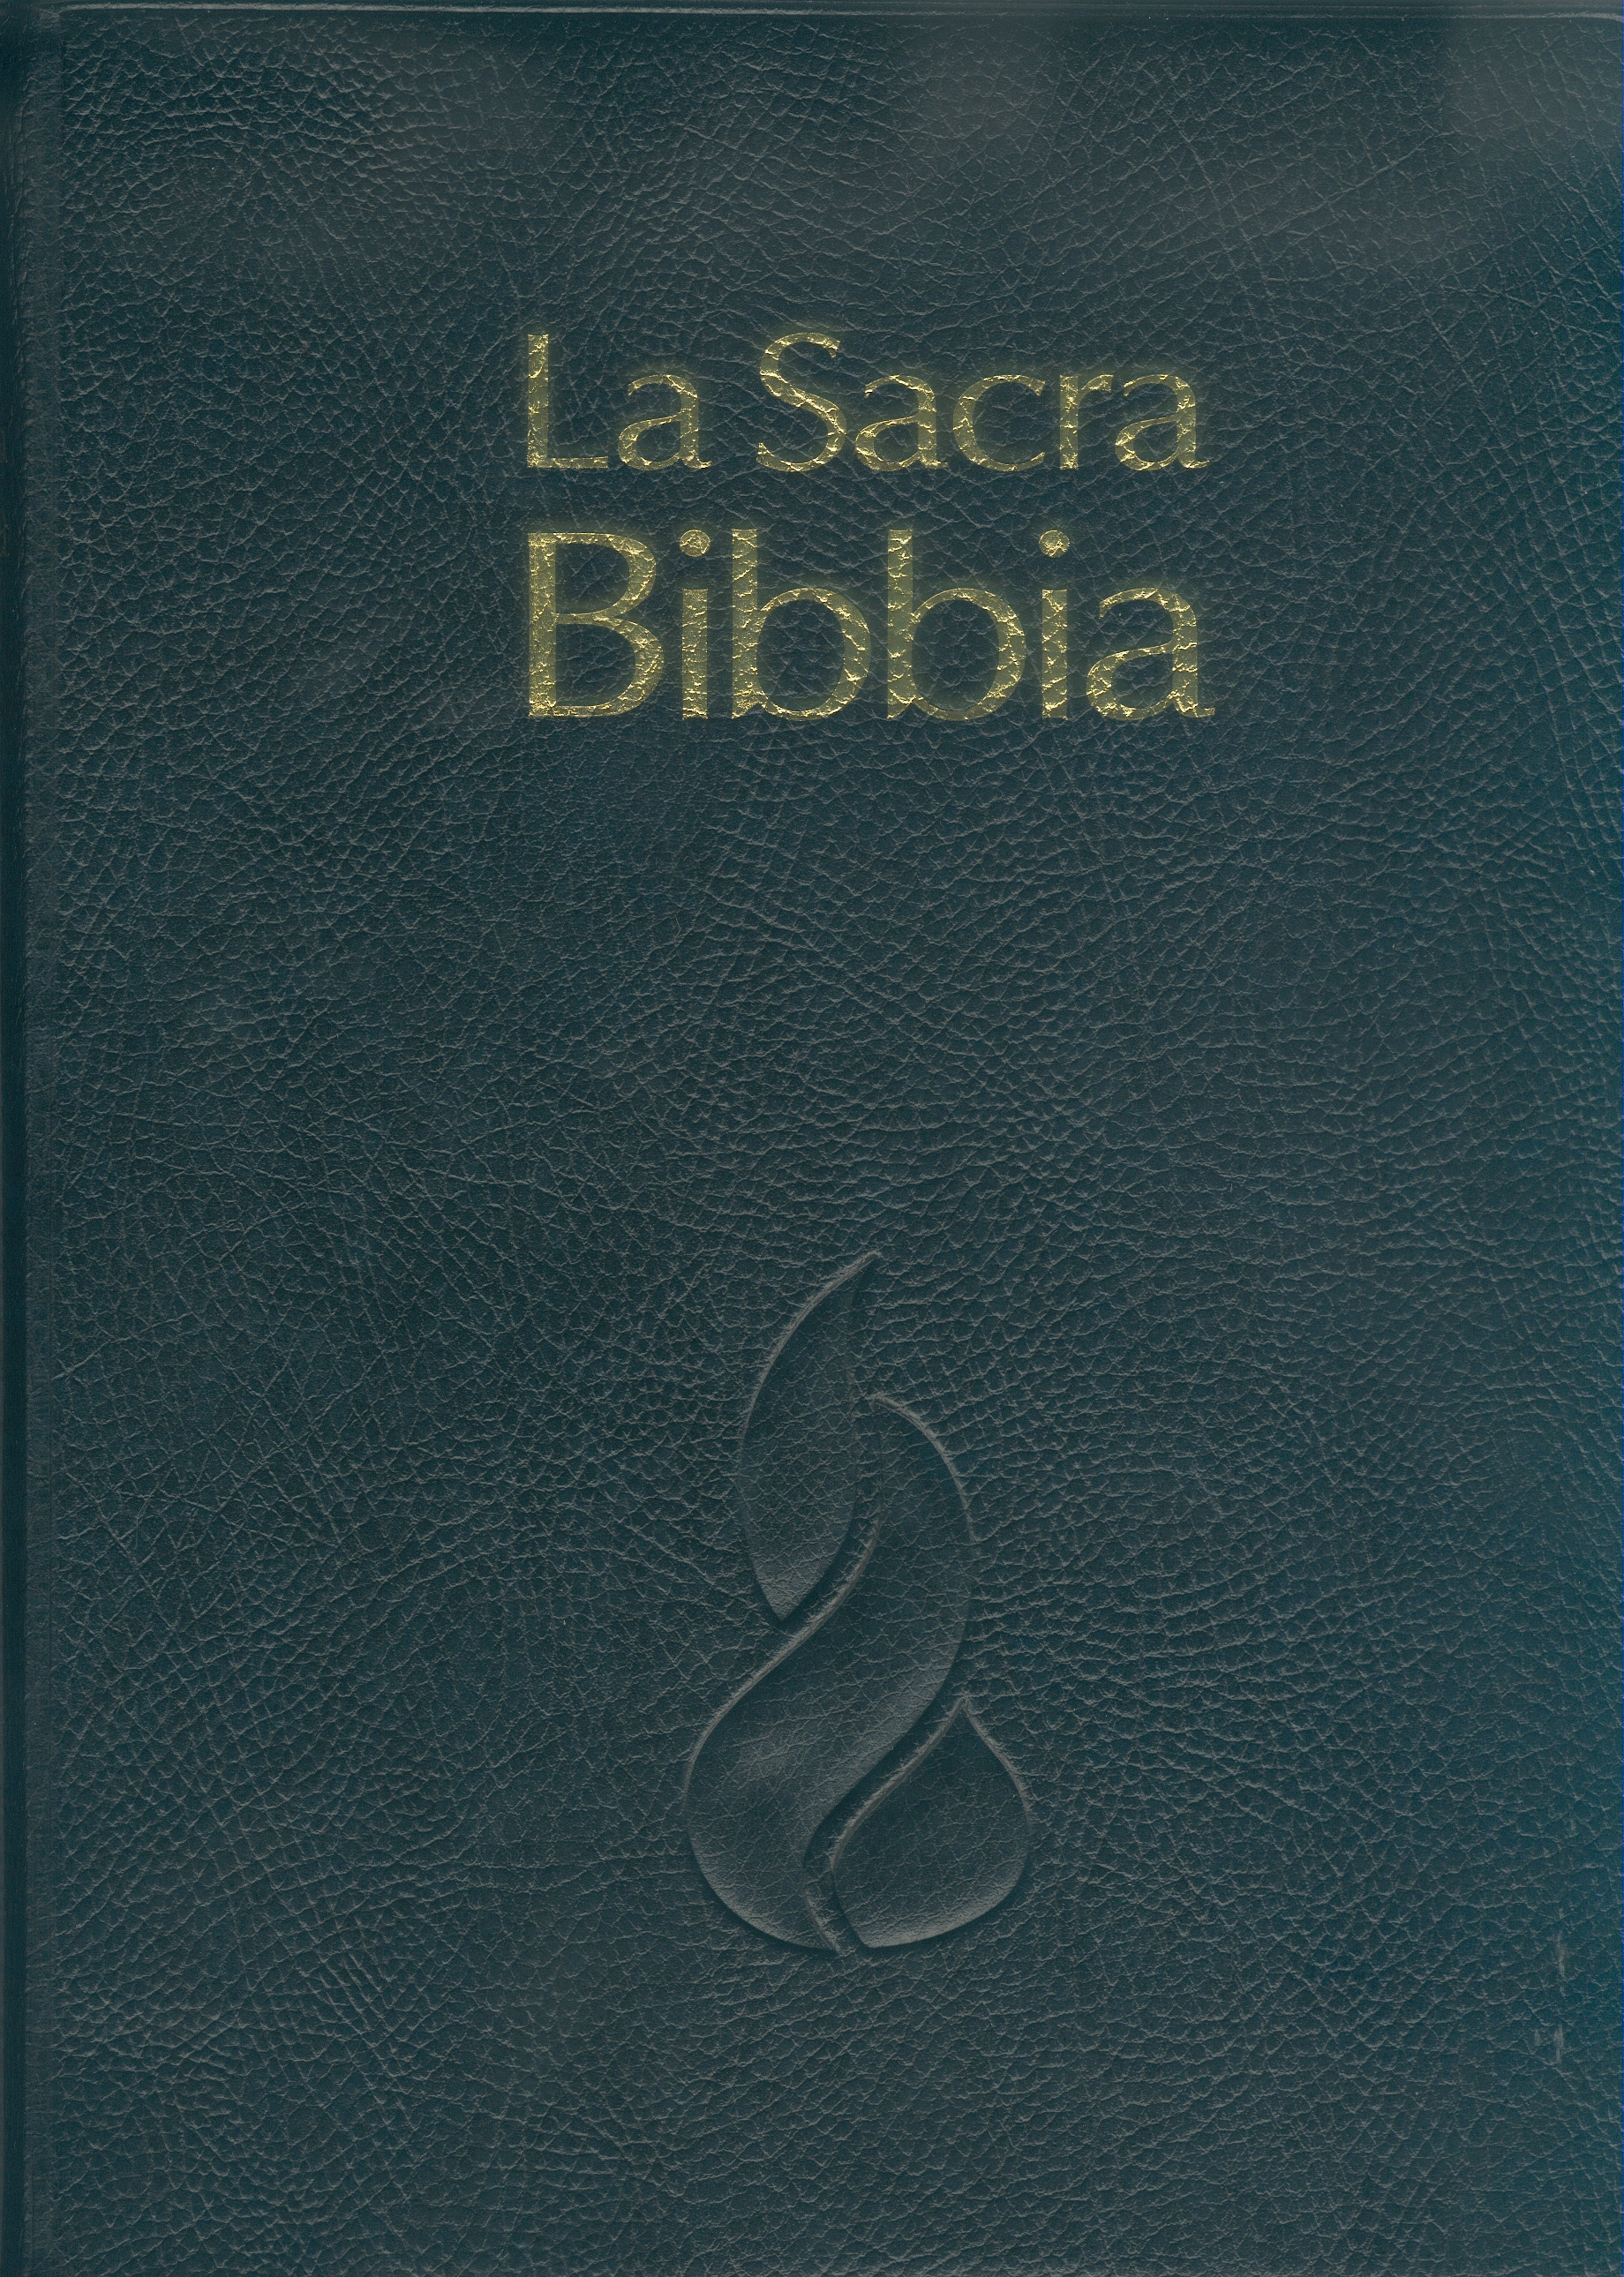 Italien, Bible NR d'étude avec parallèles souple PVC noir